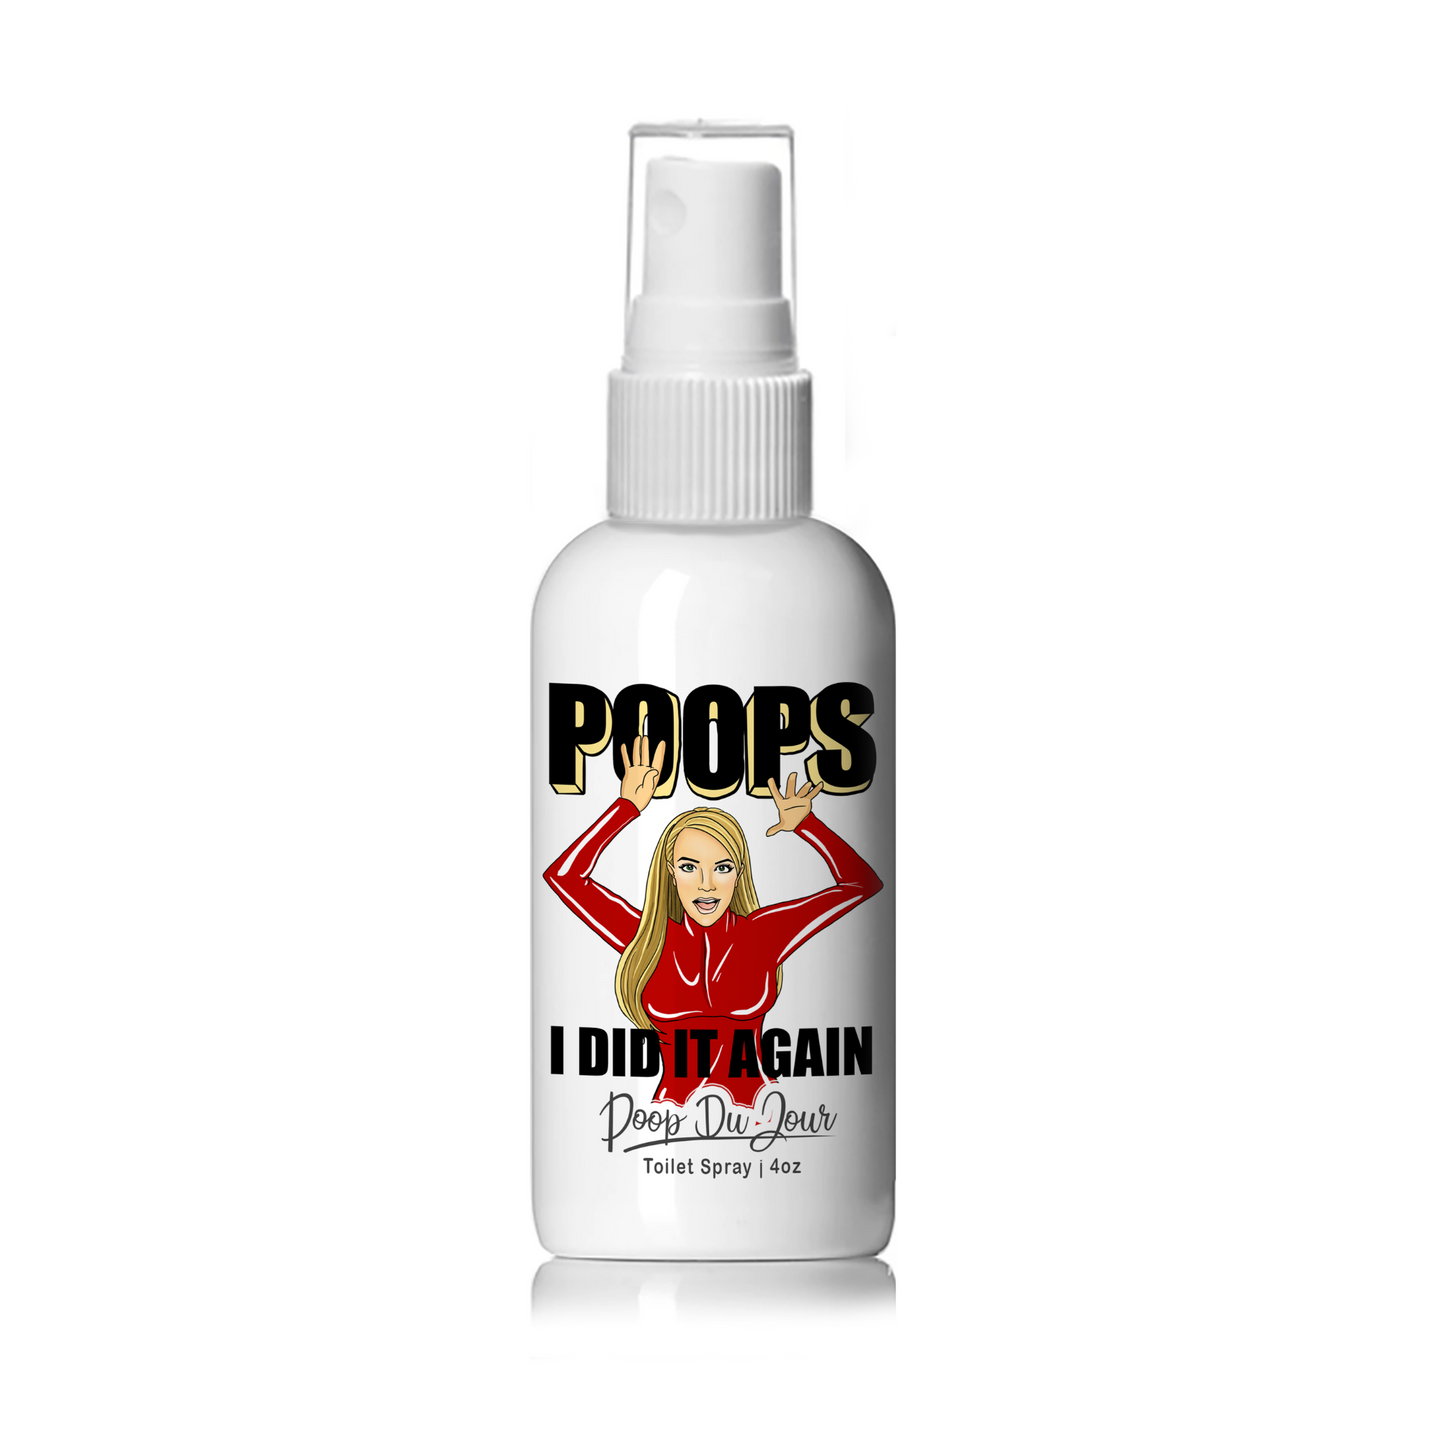 Poops I Did it Again - Britney S. Poop Du Jour Toilet Spray